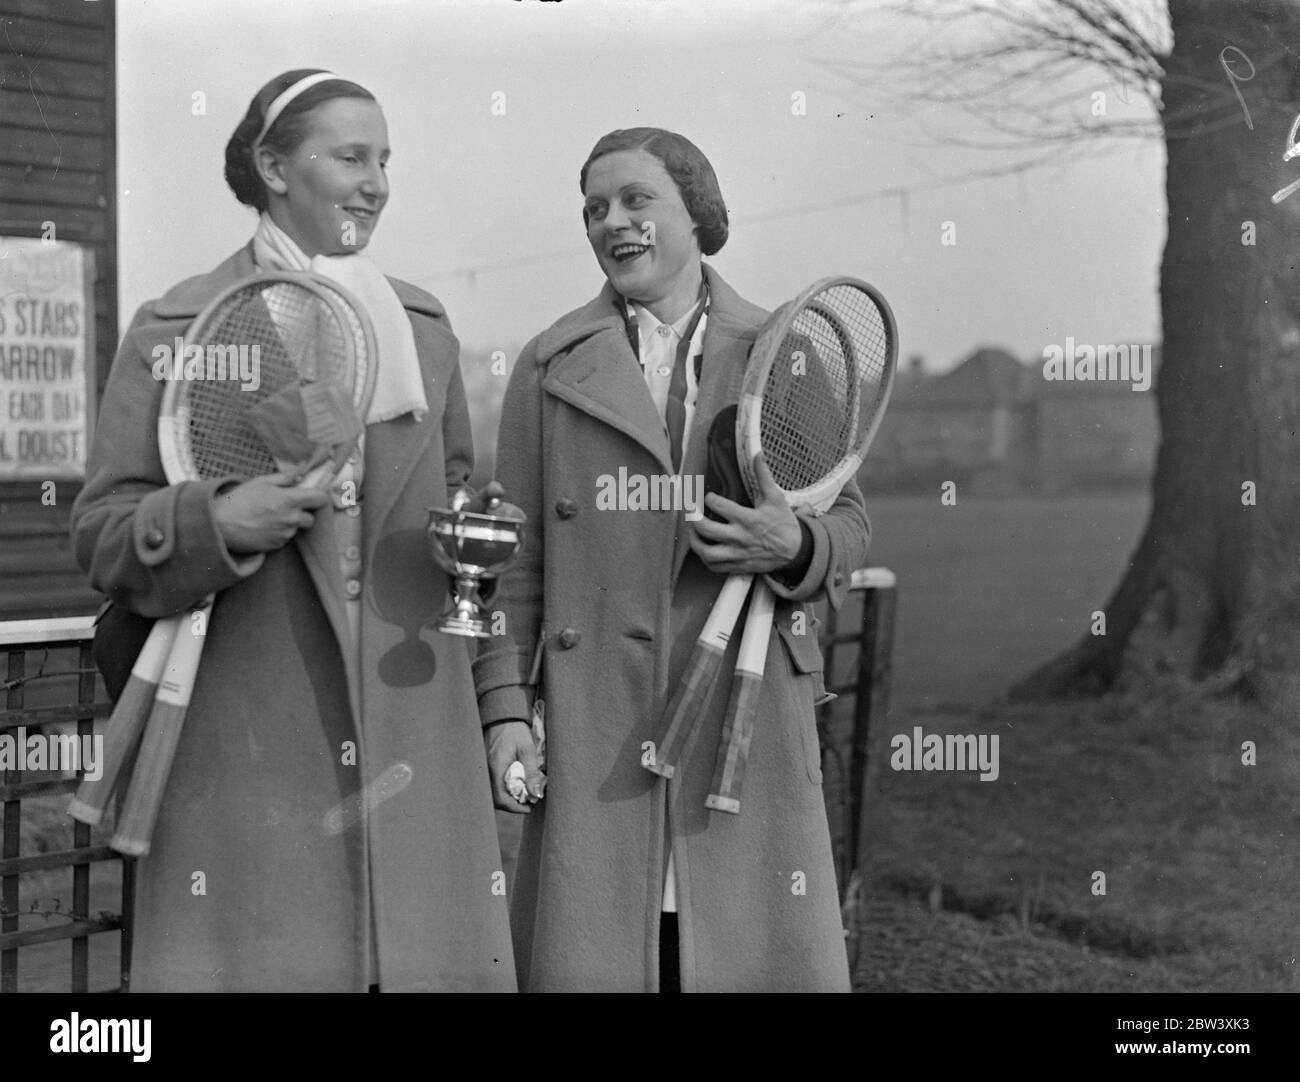 Miss Dorothy Round schlug Miss Mary Heeley im Finale der Frauen-Singles beim Herga Club Tennisturnier Harrow. Der Score war 4-6 6-3 6-3 Foto zeigt Miss Round (Holding Cup) mit Miss Heeley nach ihrem Spiel. März 1937 Stockfoto